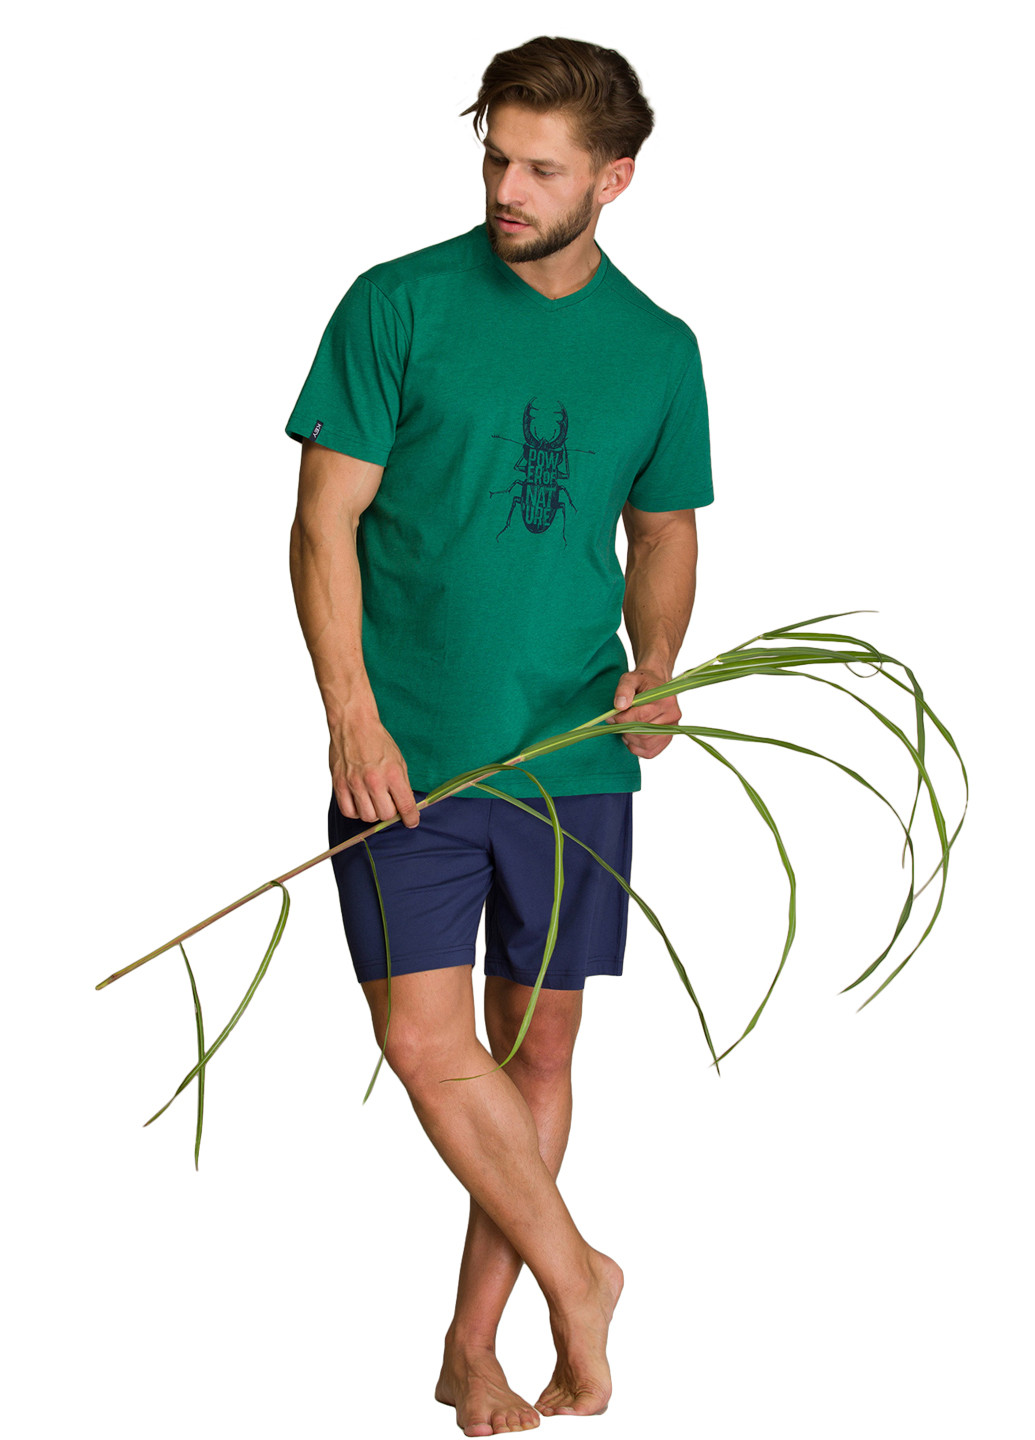 Піжама (футболка, шорти) Key футболка + шорти малюнок зелена домашня трикотаж, бавовна